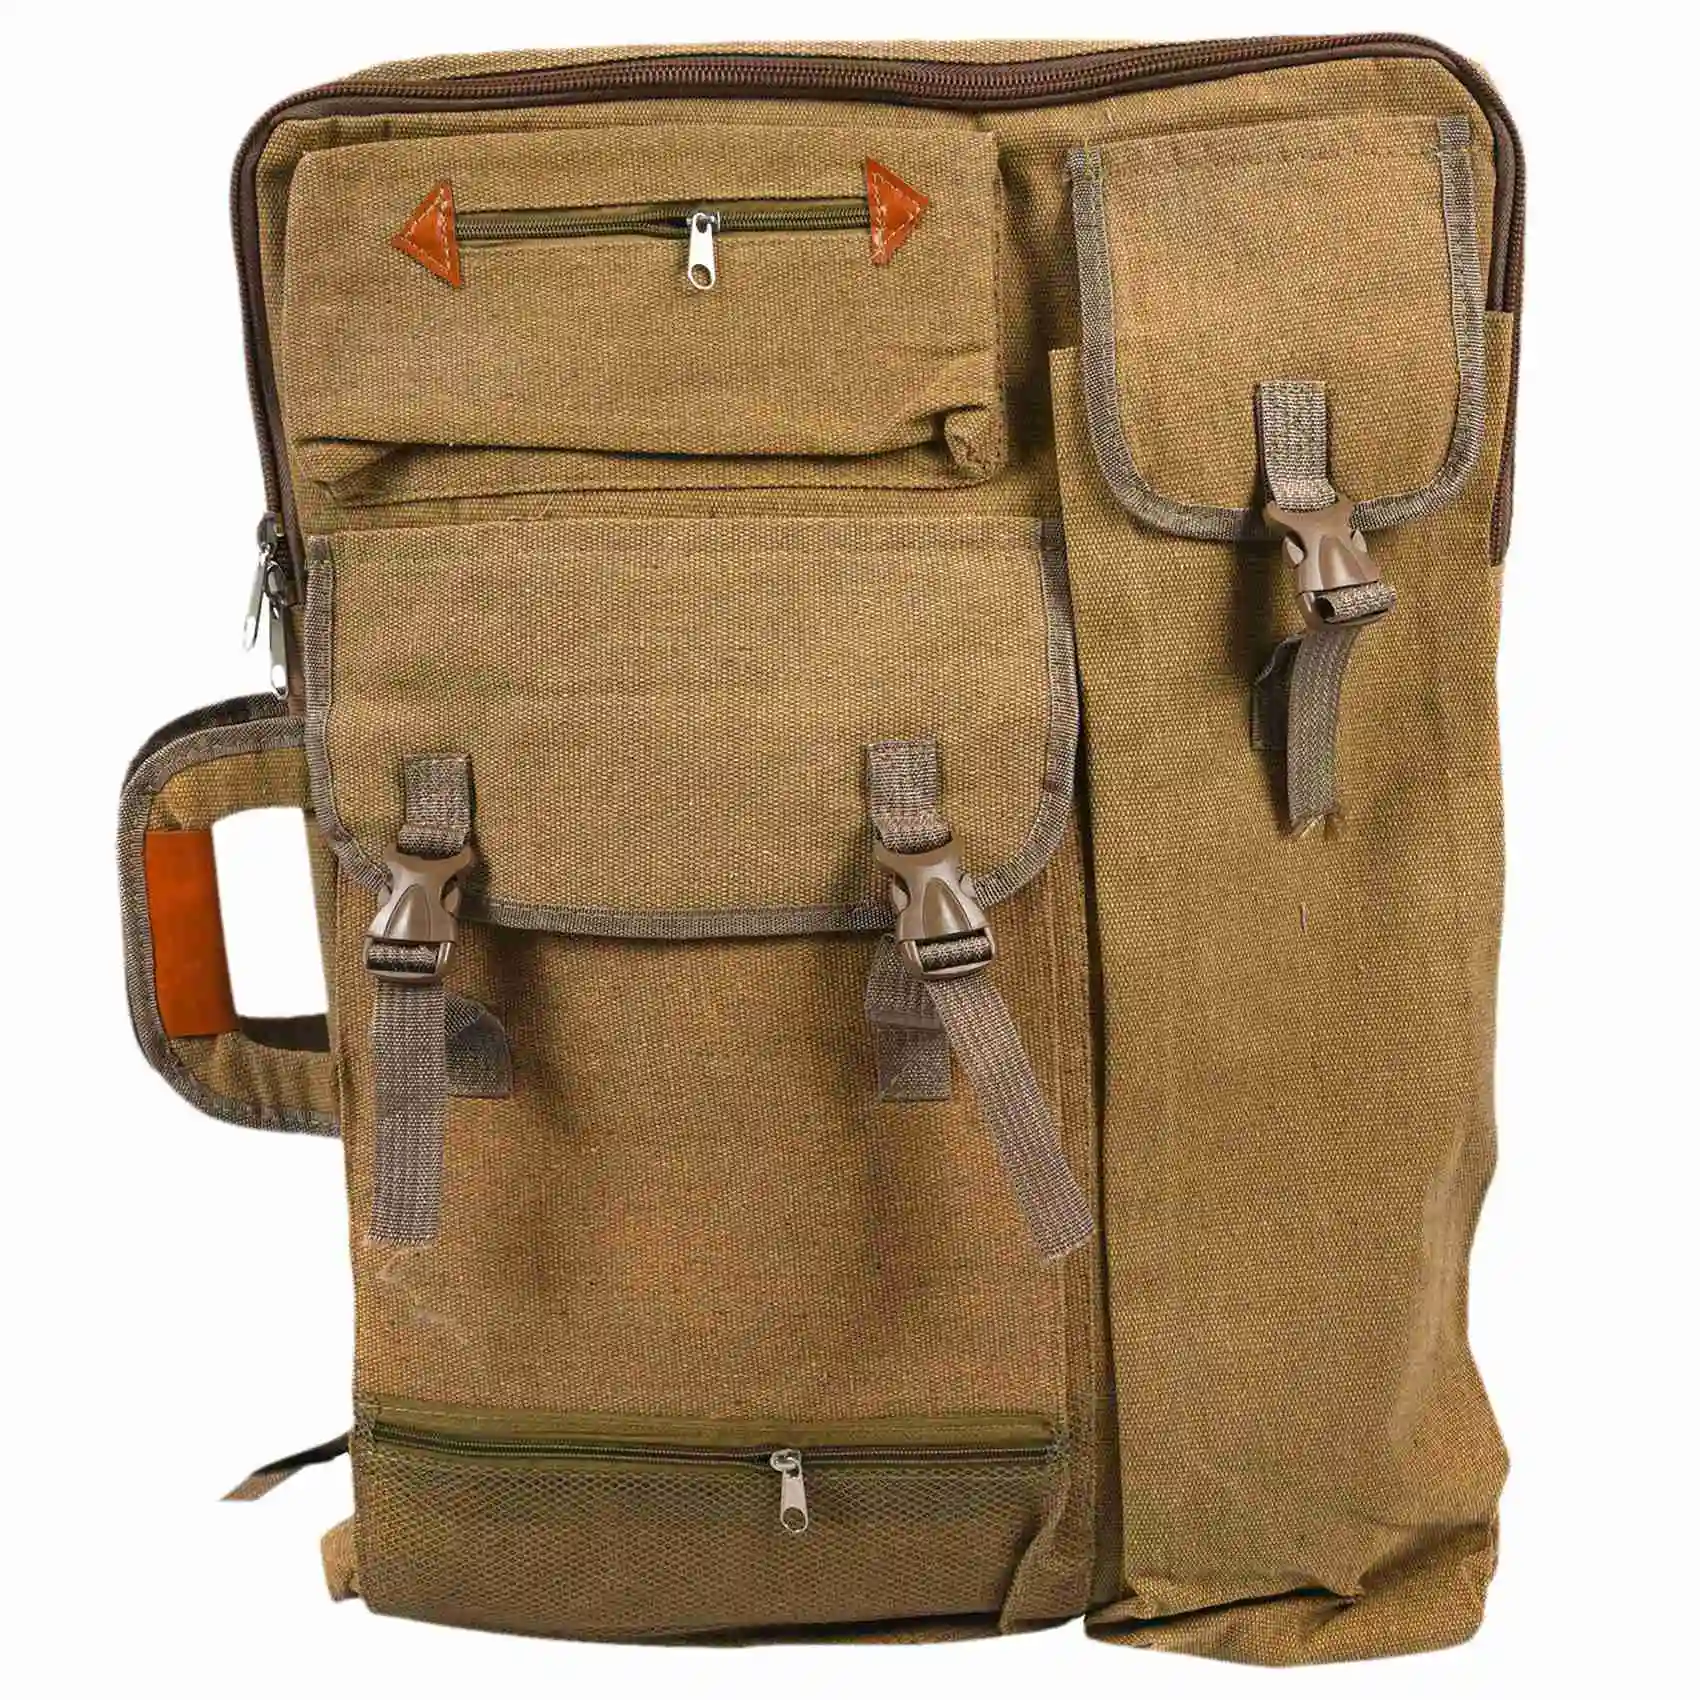 

Art Portfolio Bag Case Backpack Drawing Board Shoulder Bag with Zipper Shoulder Straps for Artist Painter Students Artwork Khaki